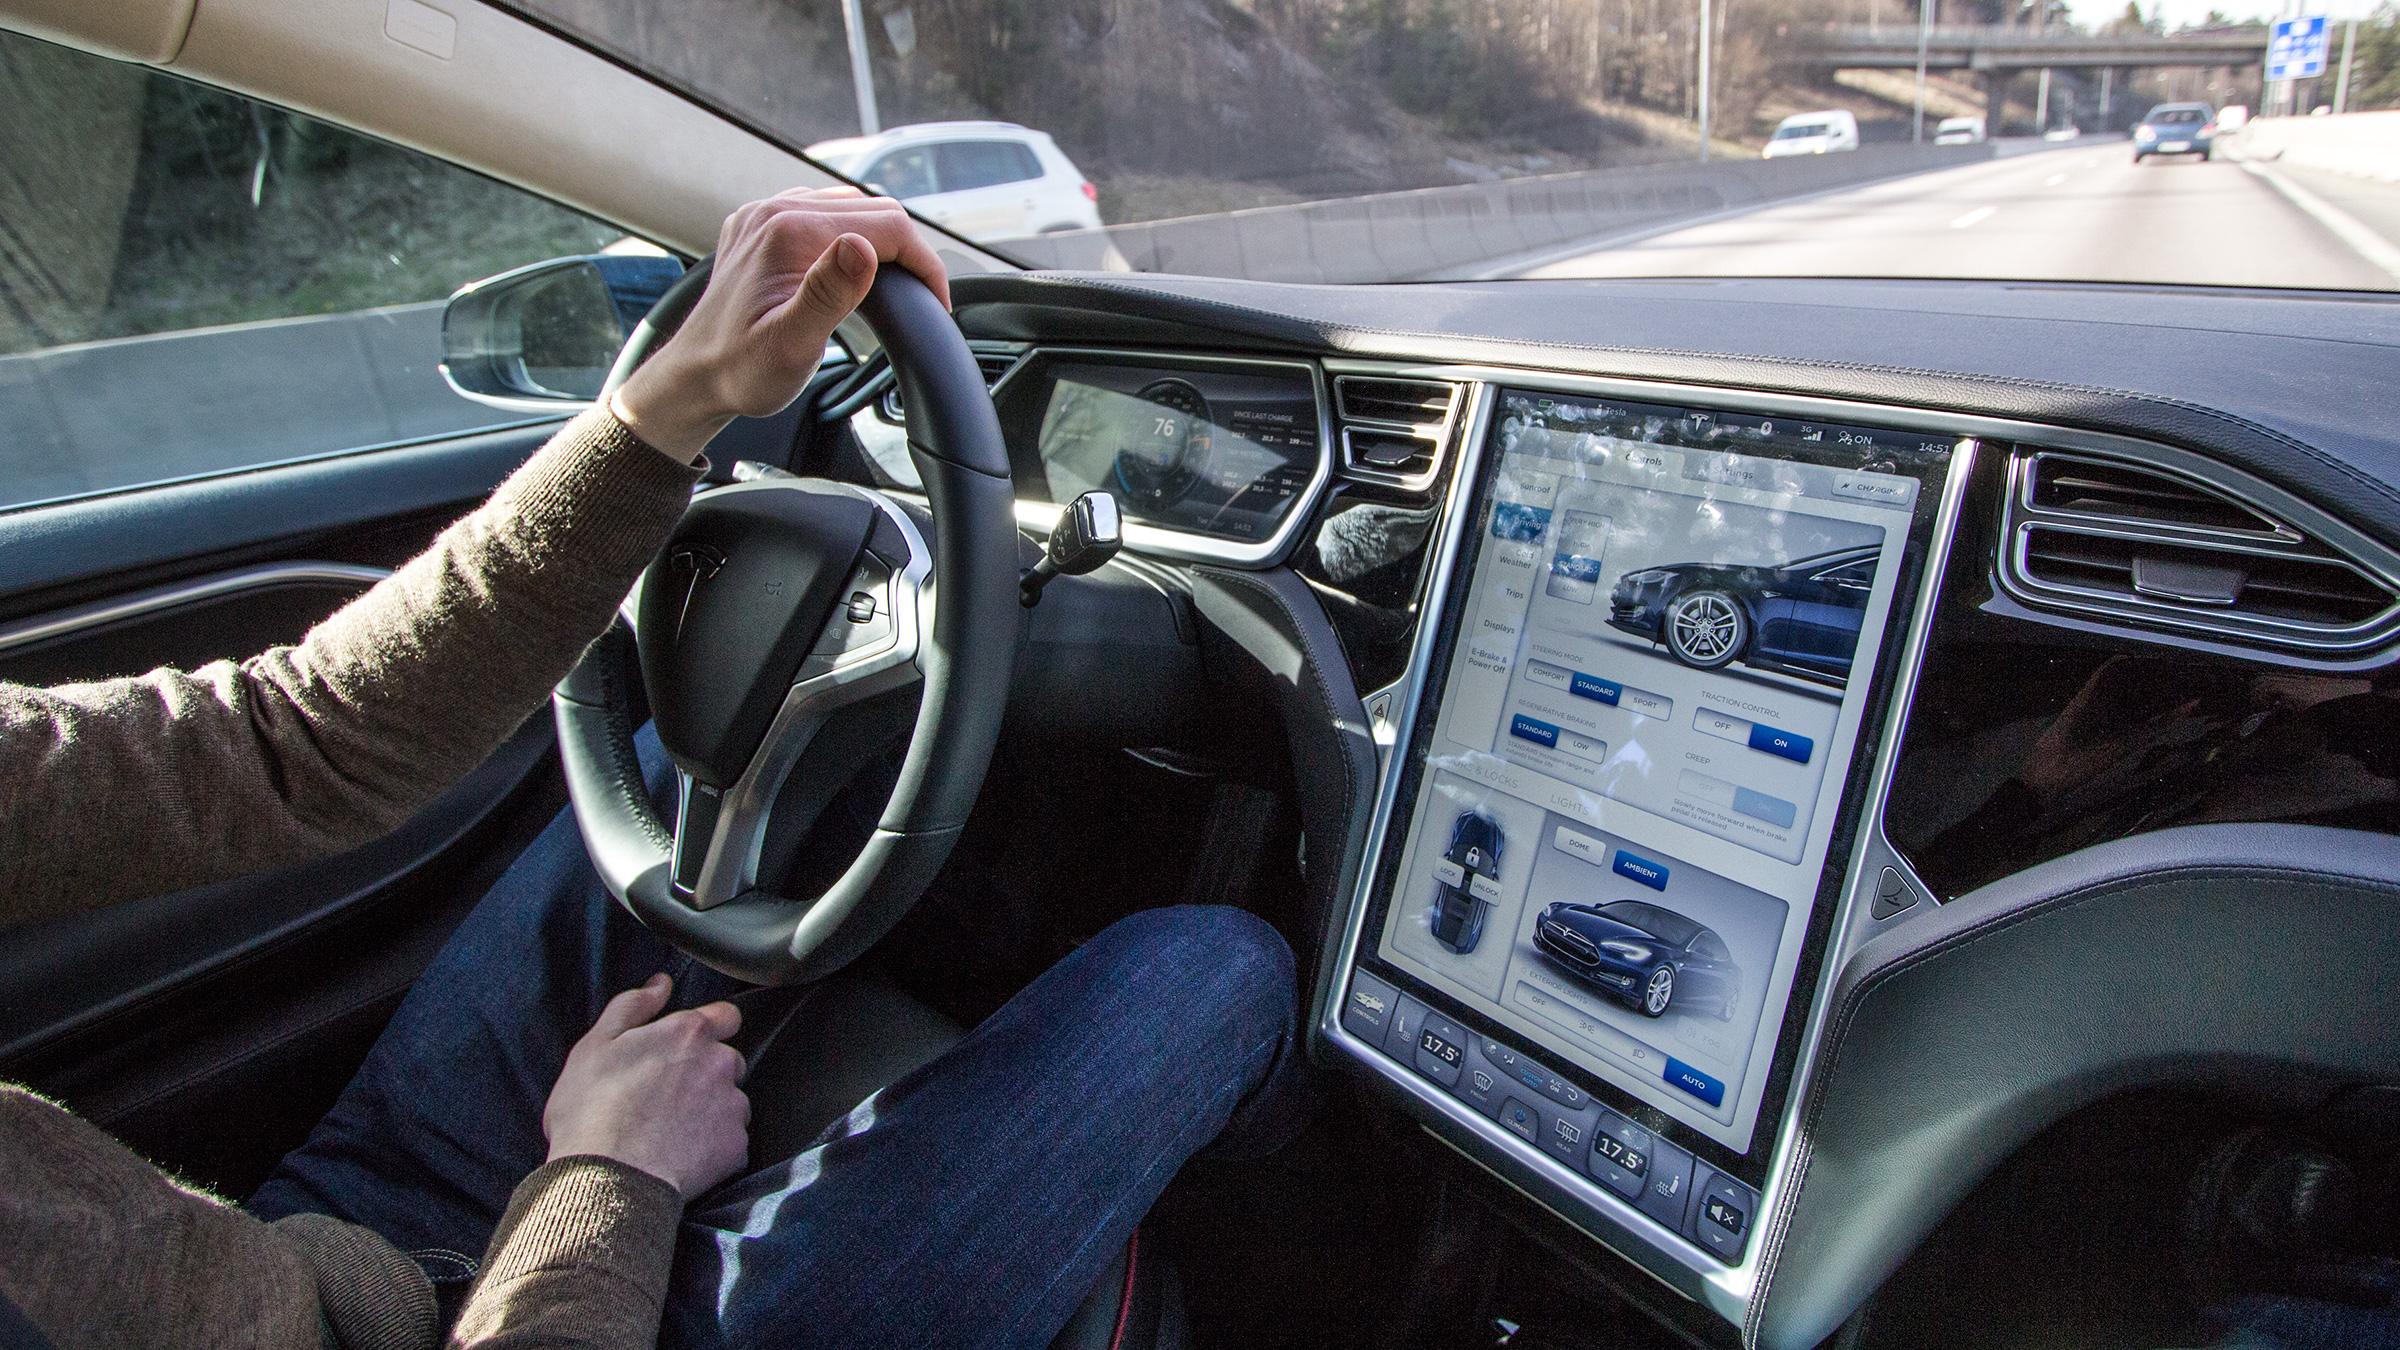 Førerområdet i Tesla Model S bærer virkelig preg av teknologien som er stappet inn i bilen. Det finnes ikke en eneste analog viser, og de få fysiske bryterne styrer langt mindre enn det vi er vant med. Selv lysene og klimaanlegget må slås av eller på fra skjermen, med mindre du lar alt være automatisk styrt. Dermed blir det fort noen fingermerker på den, noe Tesla har tatt høyde for med en egen «rensemodus» som lar deg vaske i vei uten å kunne stille på noen funksjoner.Foto: Vegar Jansen, Hardware.no